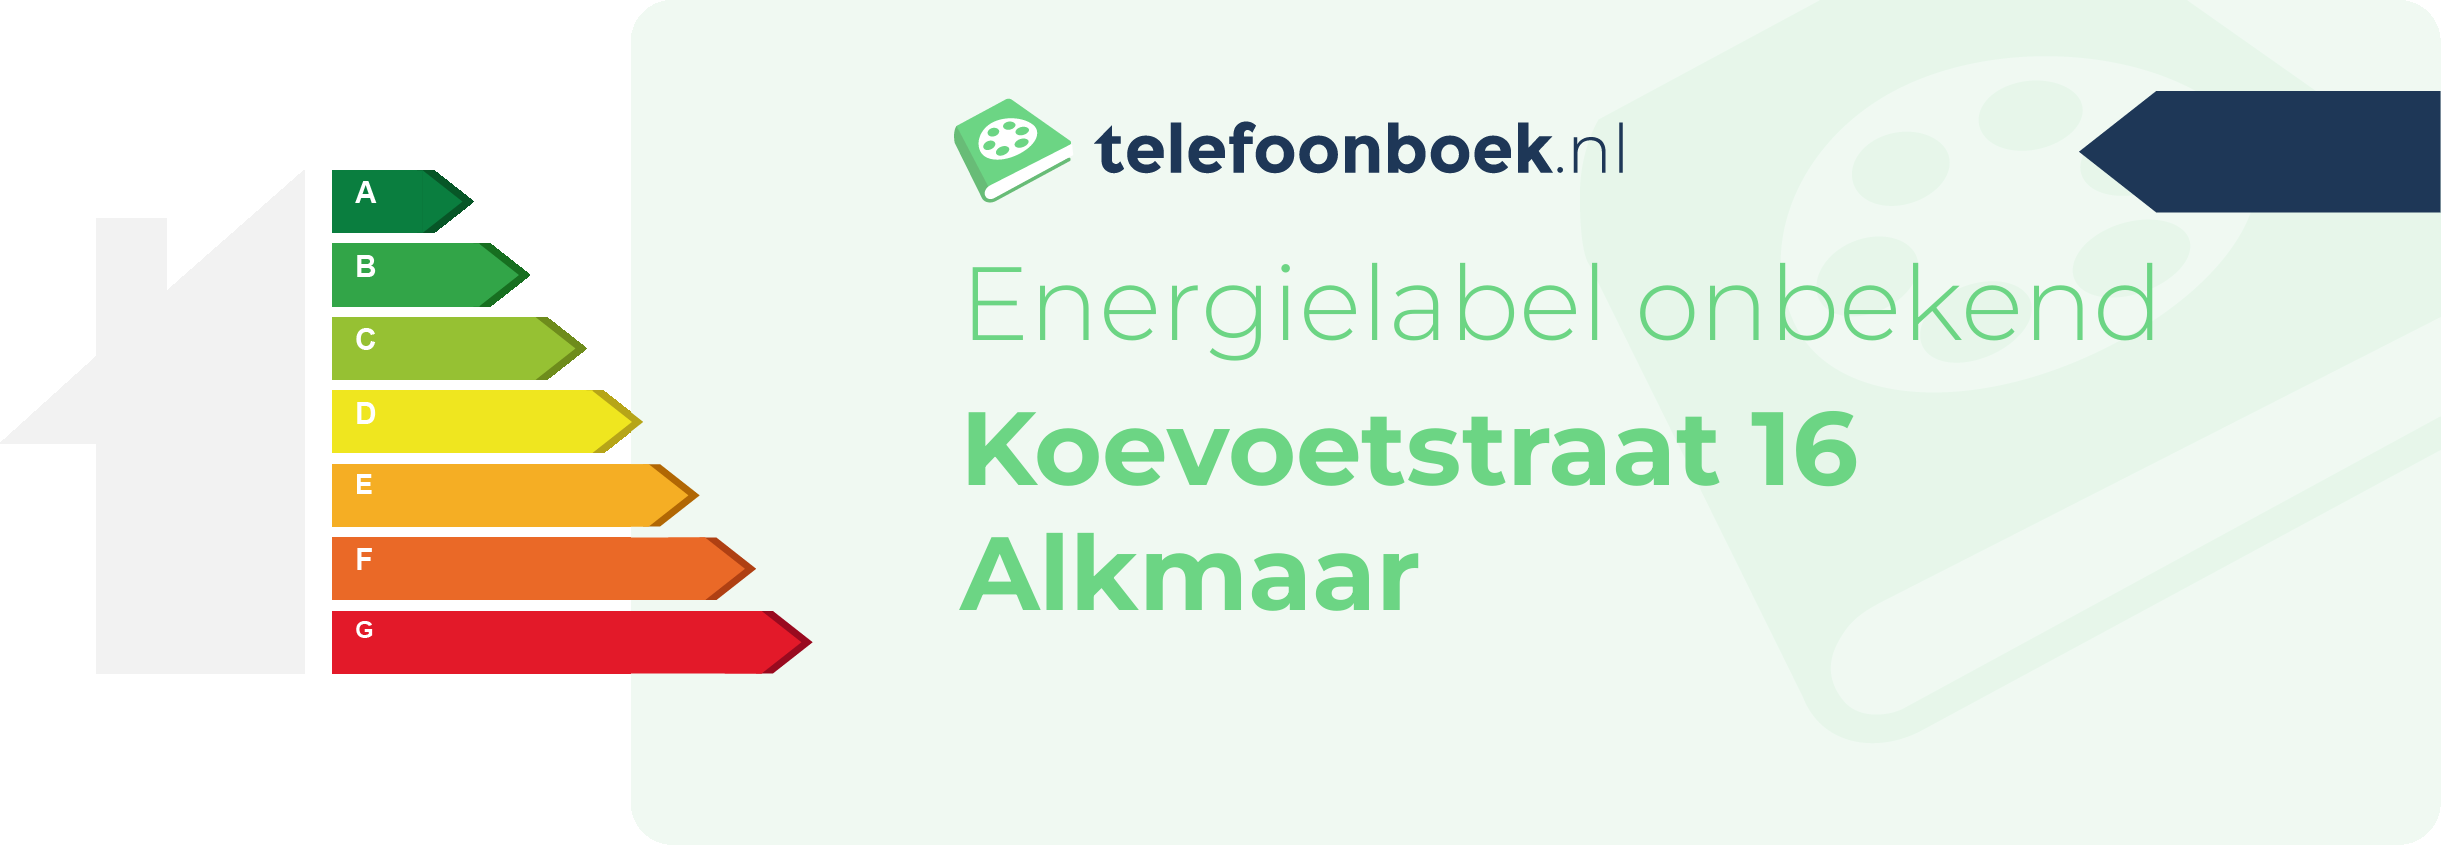 Energielabel Koevoetstraat 16 Alkmaar